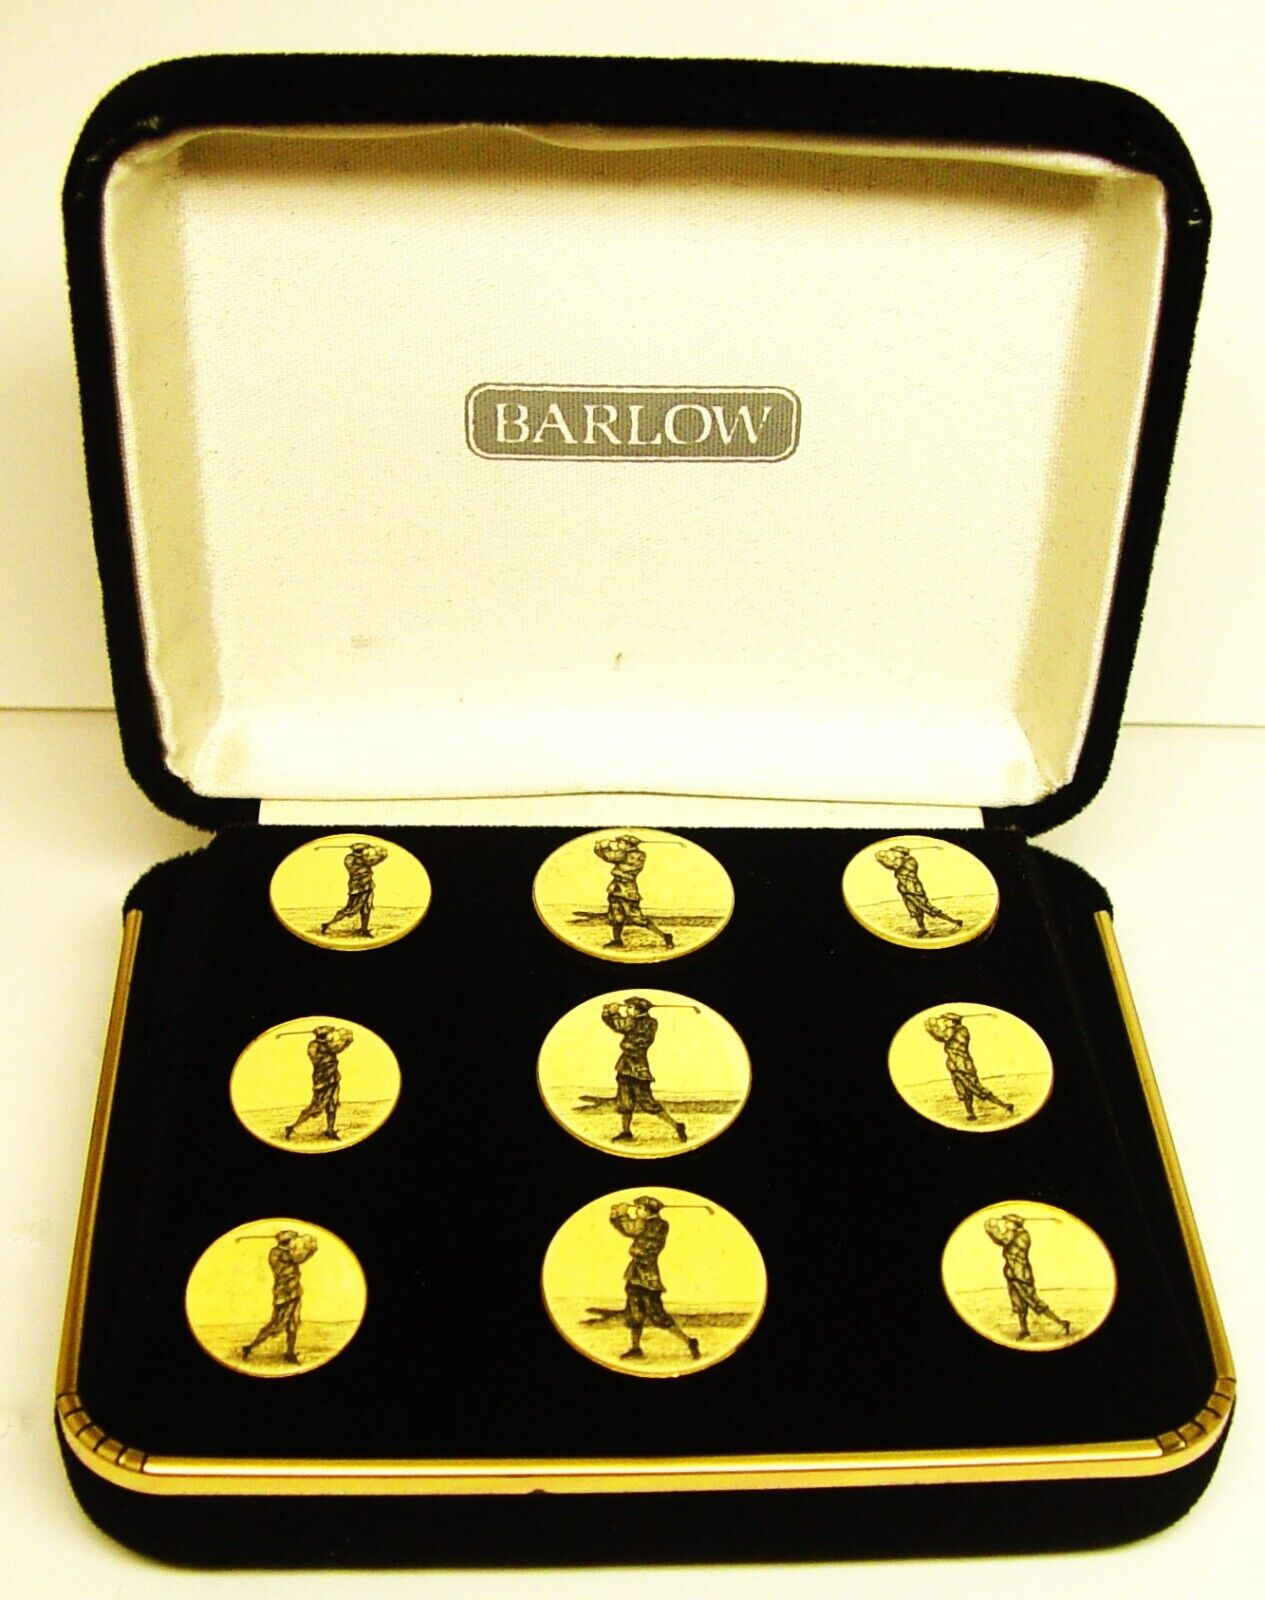 Vintage Barlow Golfer Scrimshaw 9 Button Set In Original Box Good Condition